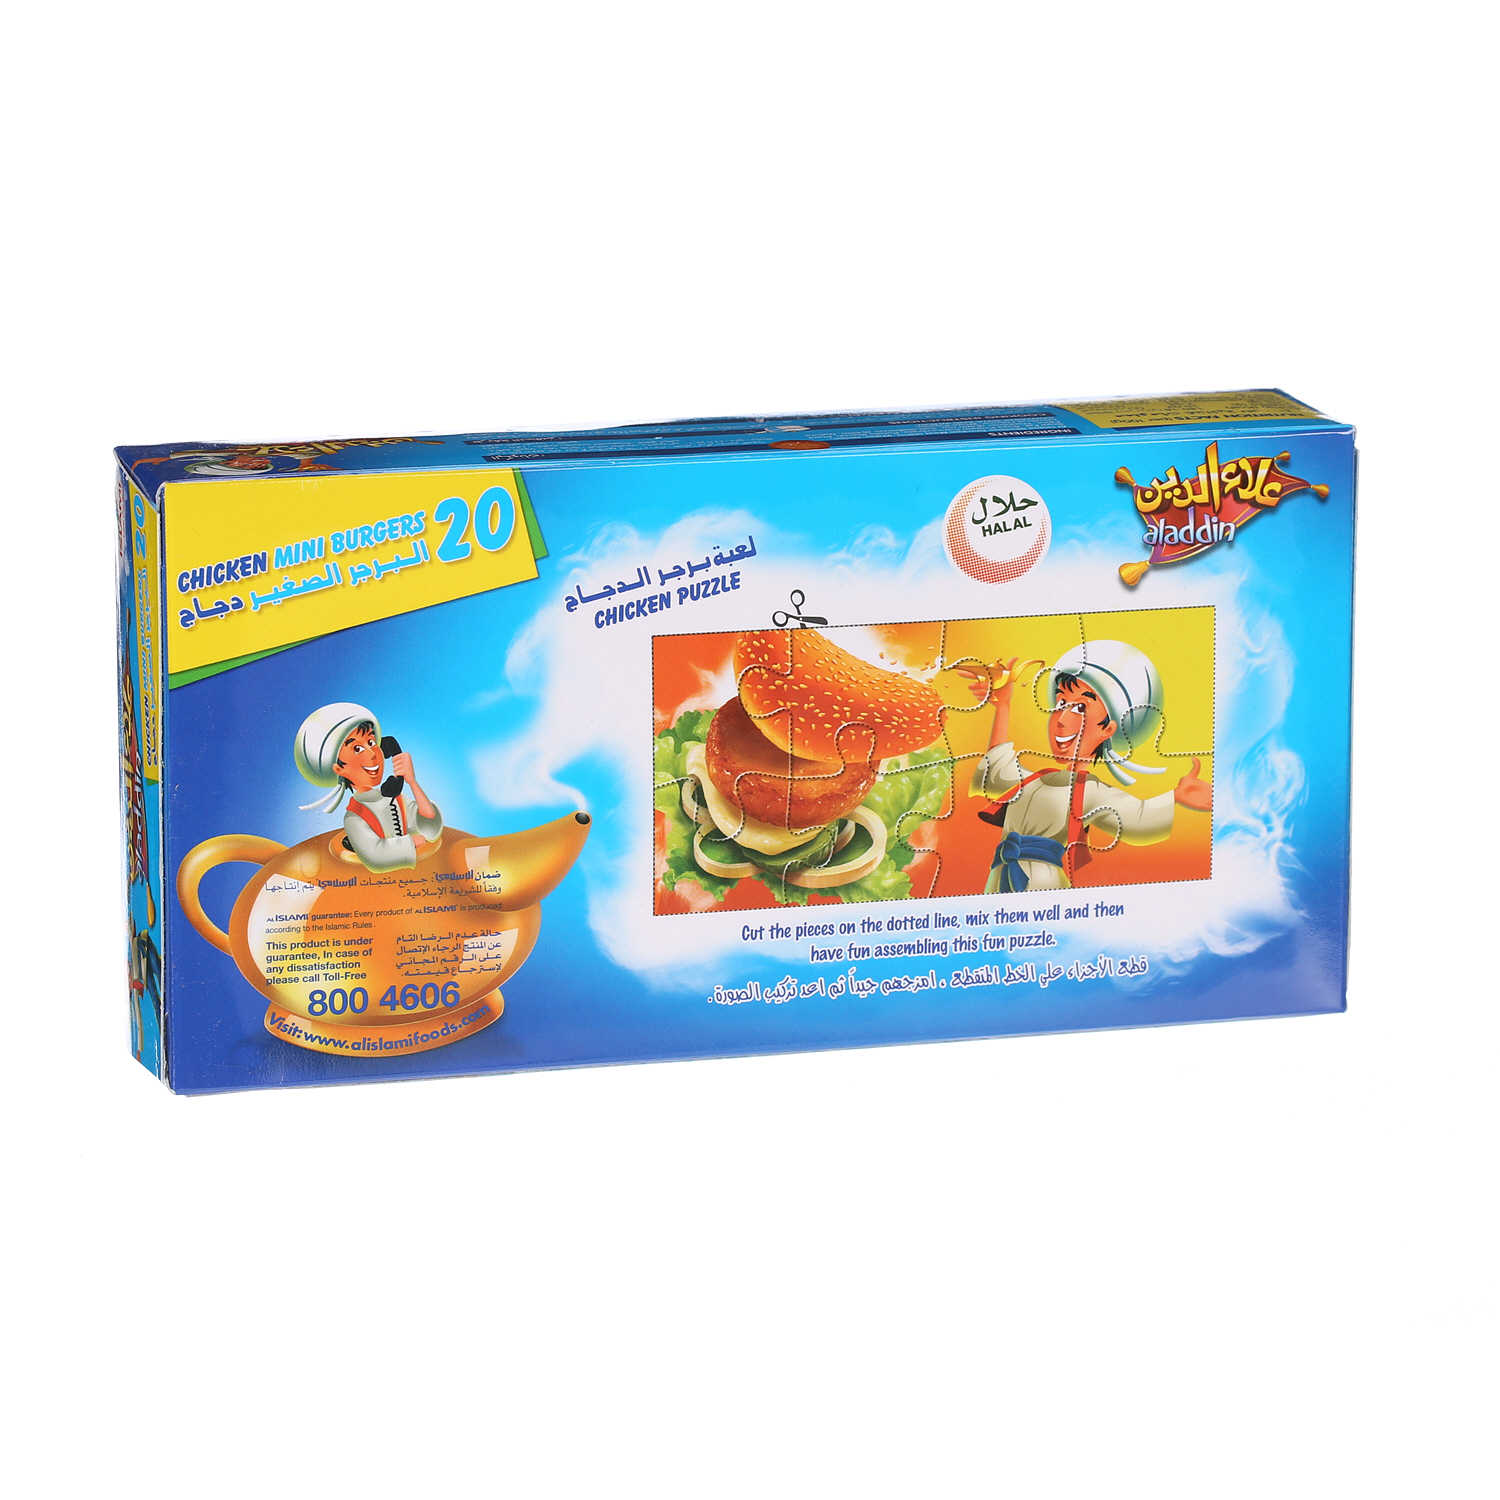 Aladdin Chicken Mini Burger 300gm